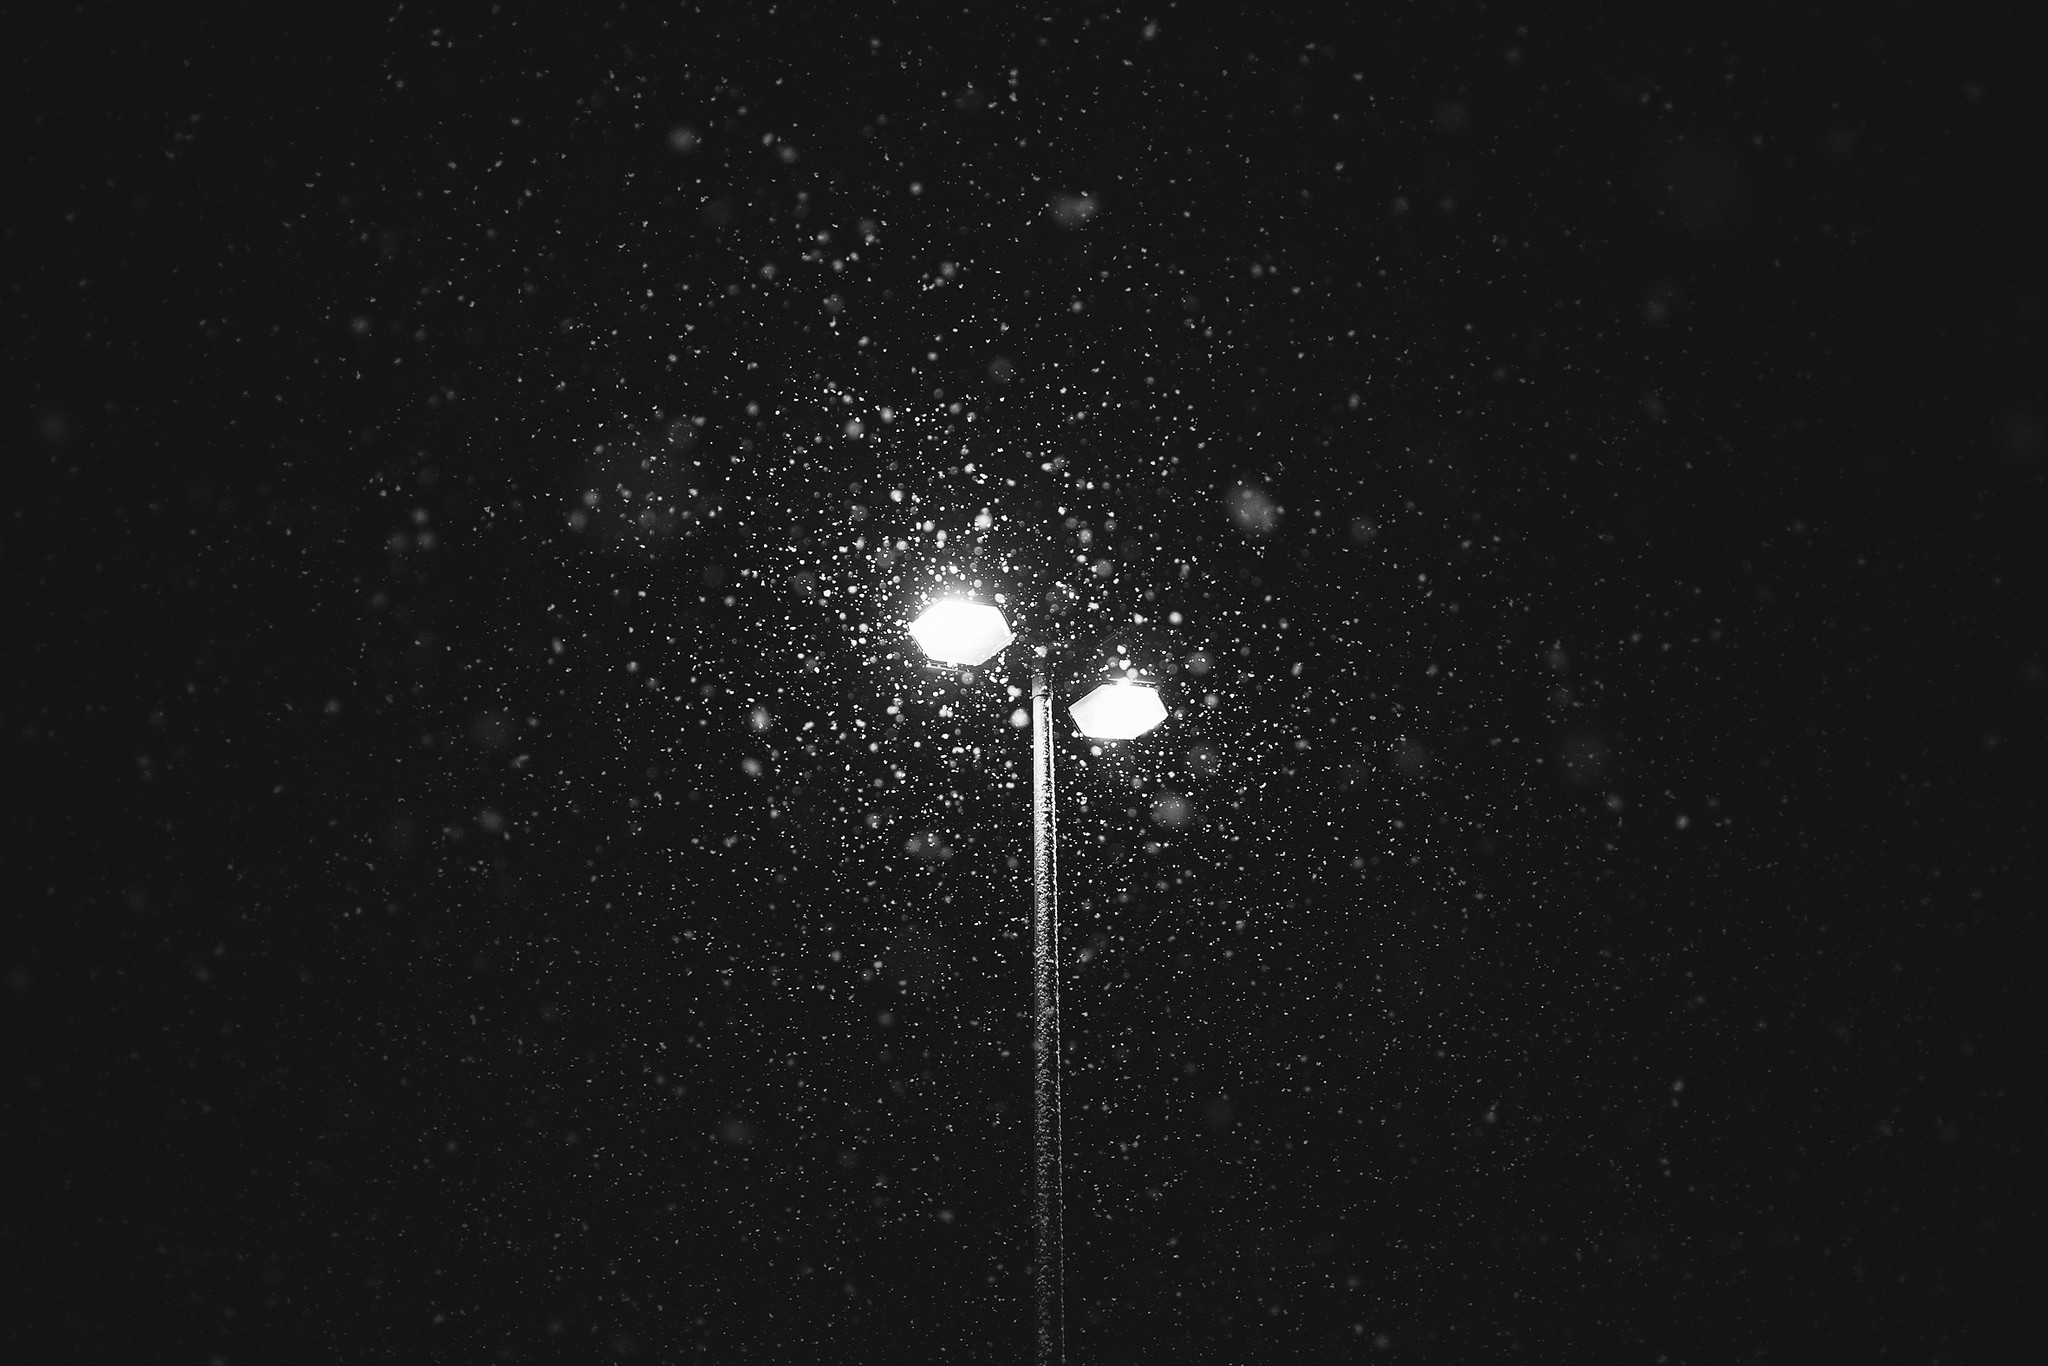 灯,黑色和白色,晚上,雪,冬季壁纸1920x1080分辨率查看